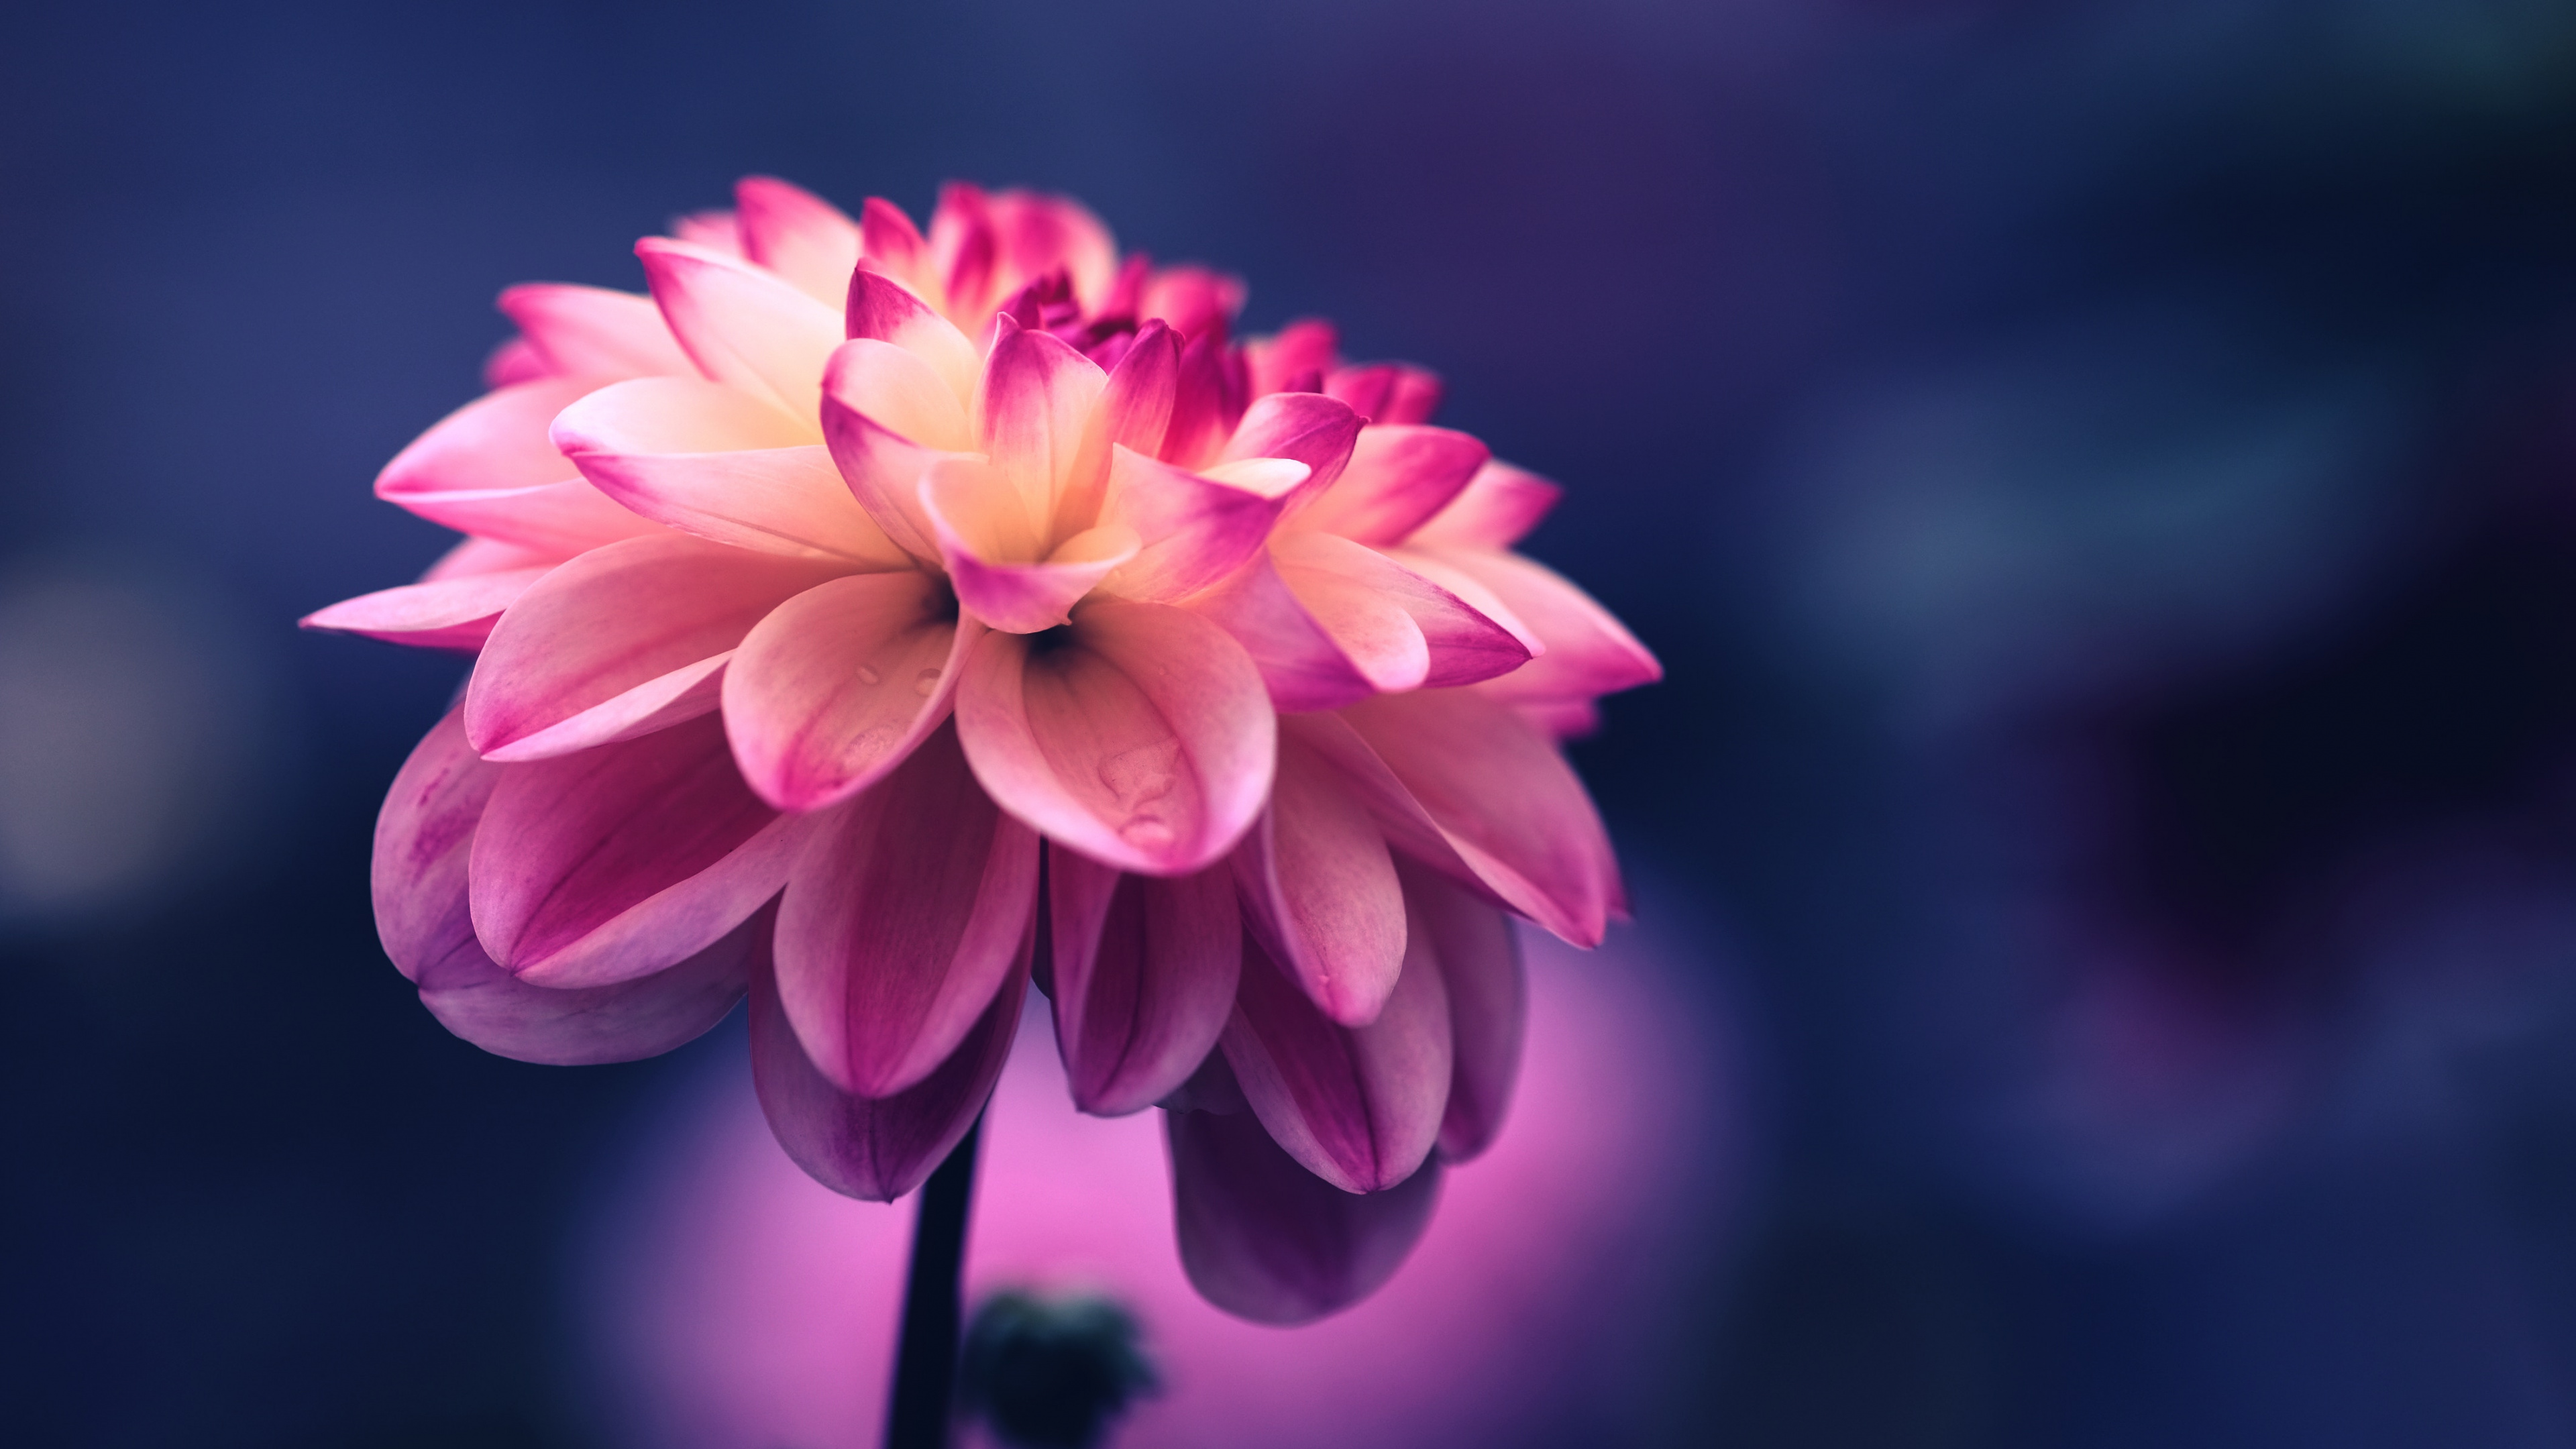 Pink, Seide, Regenbogen Stieg Auf, Blütenblatt, Blühende Pflanze. Wallpaper in 3840x2160 Resolution